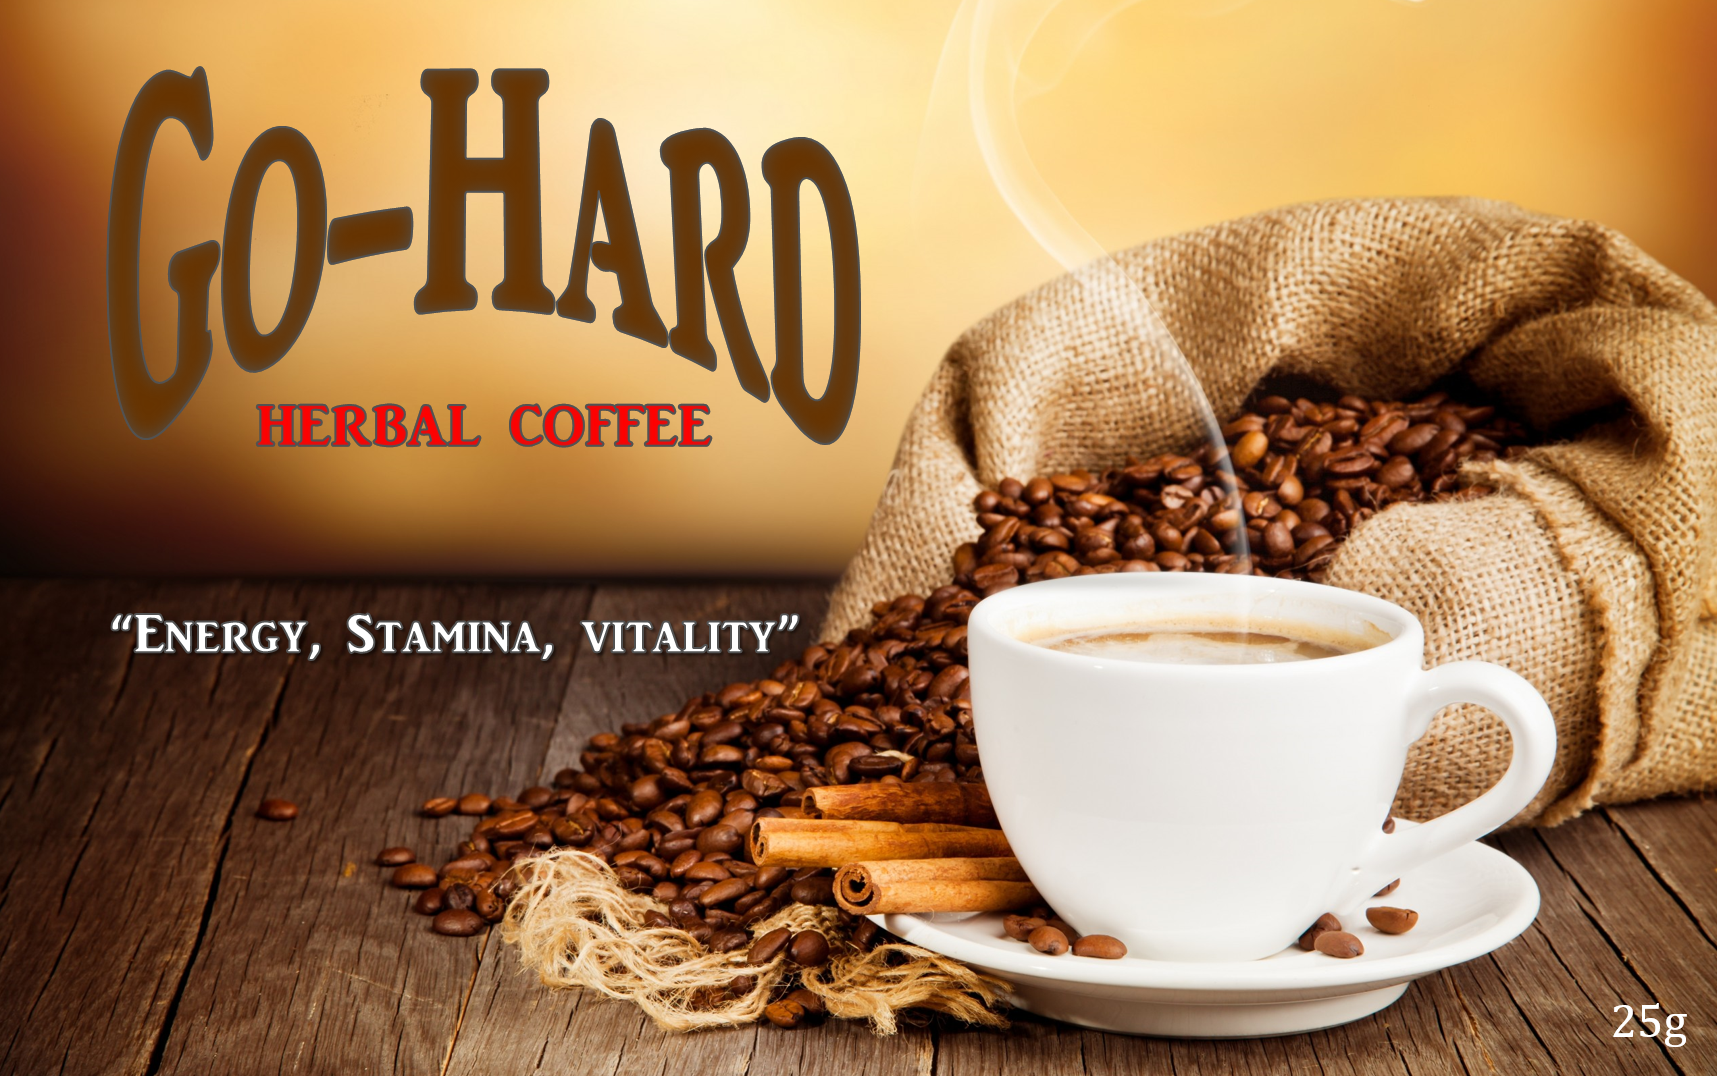 GO-HARD COFFEE 1 PACK 00000